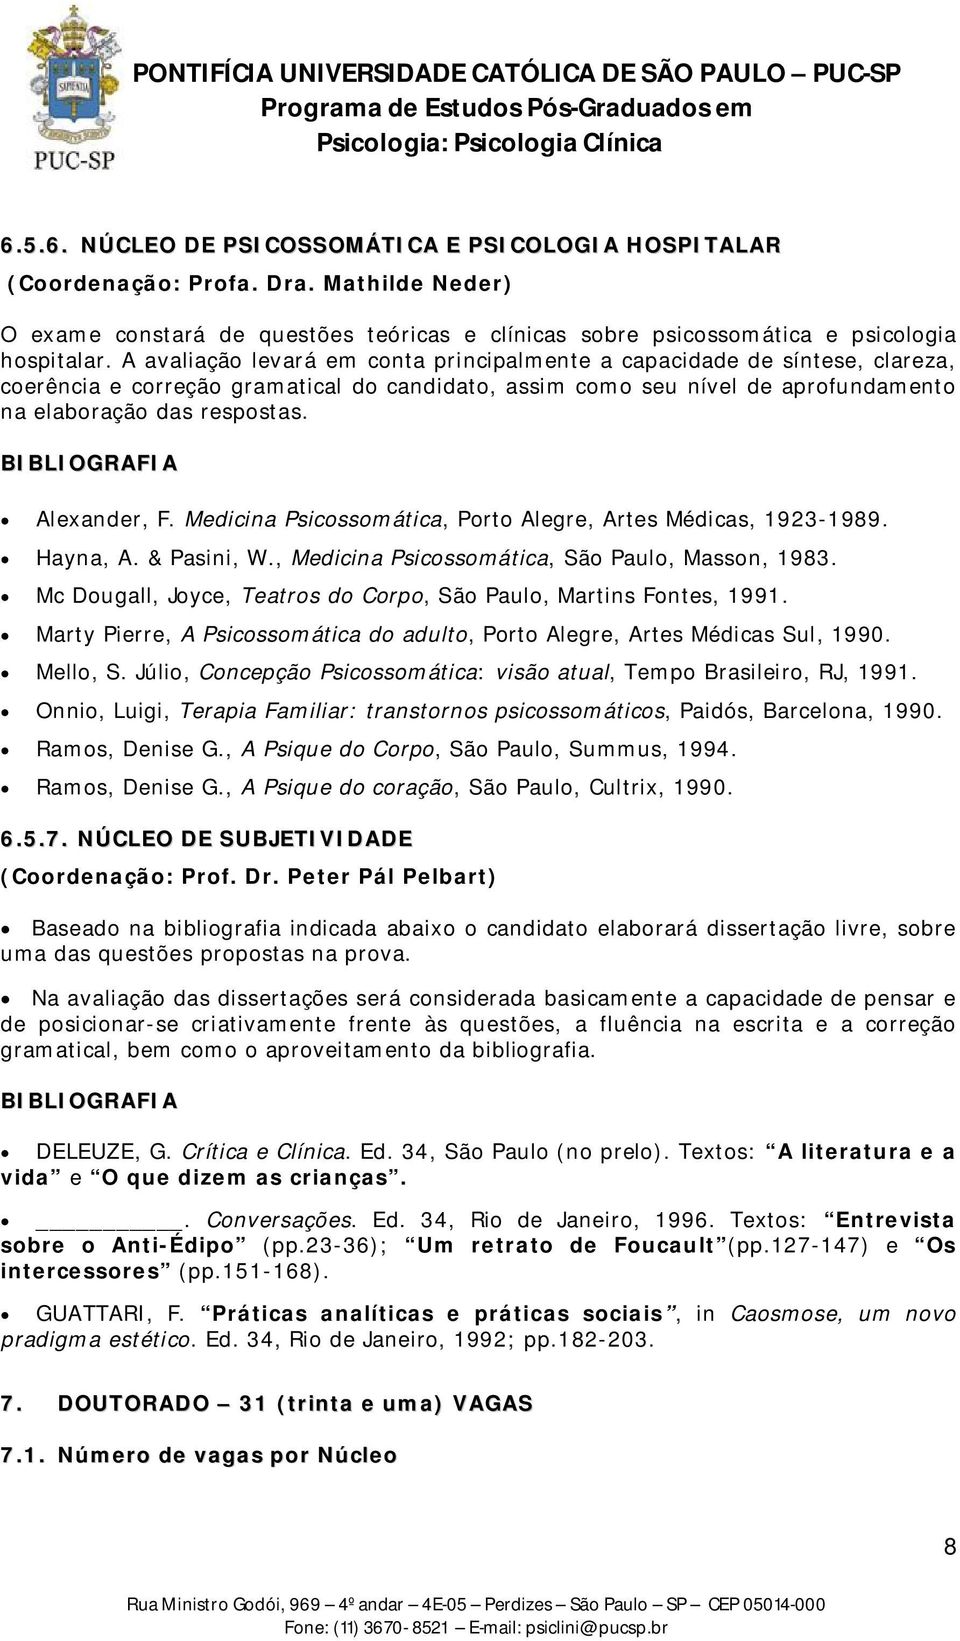 BIBLIOGRAFIA Alexander, F. Medicina Psicossomática, Porto Alegre, Artes Médicas, 1923-1989. Hayna, A. & Pasini, W., Medicina Psicossomática, São Paulo, Masson, 1983.